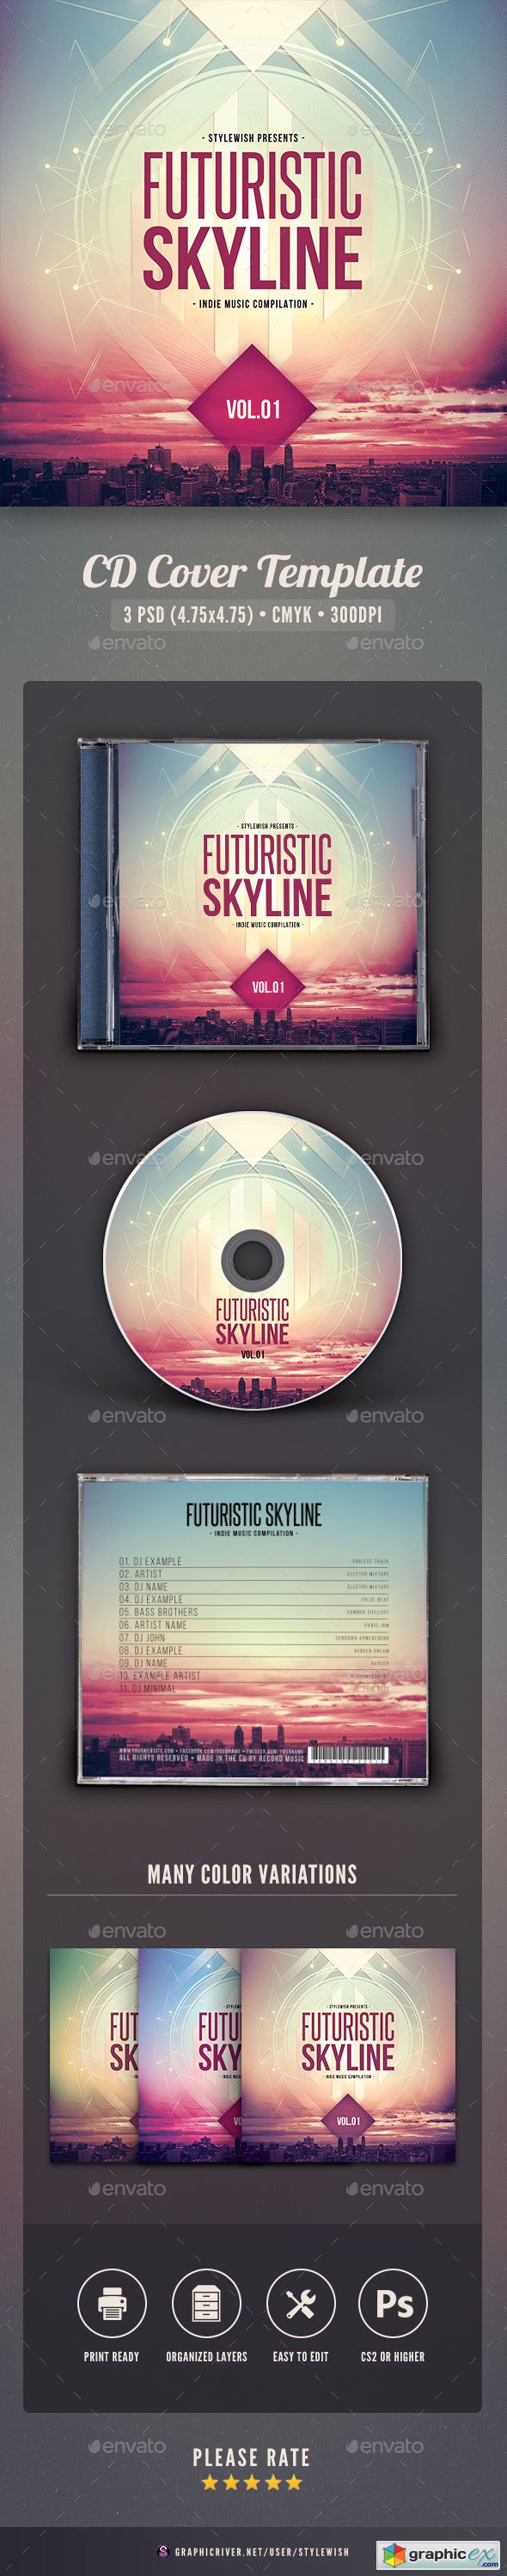 Futuristic Skyline CD Cover Artwork